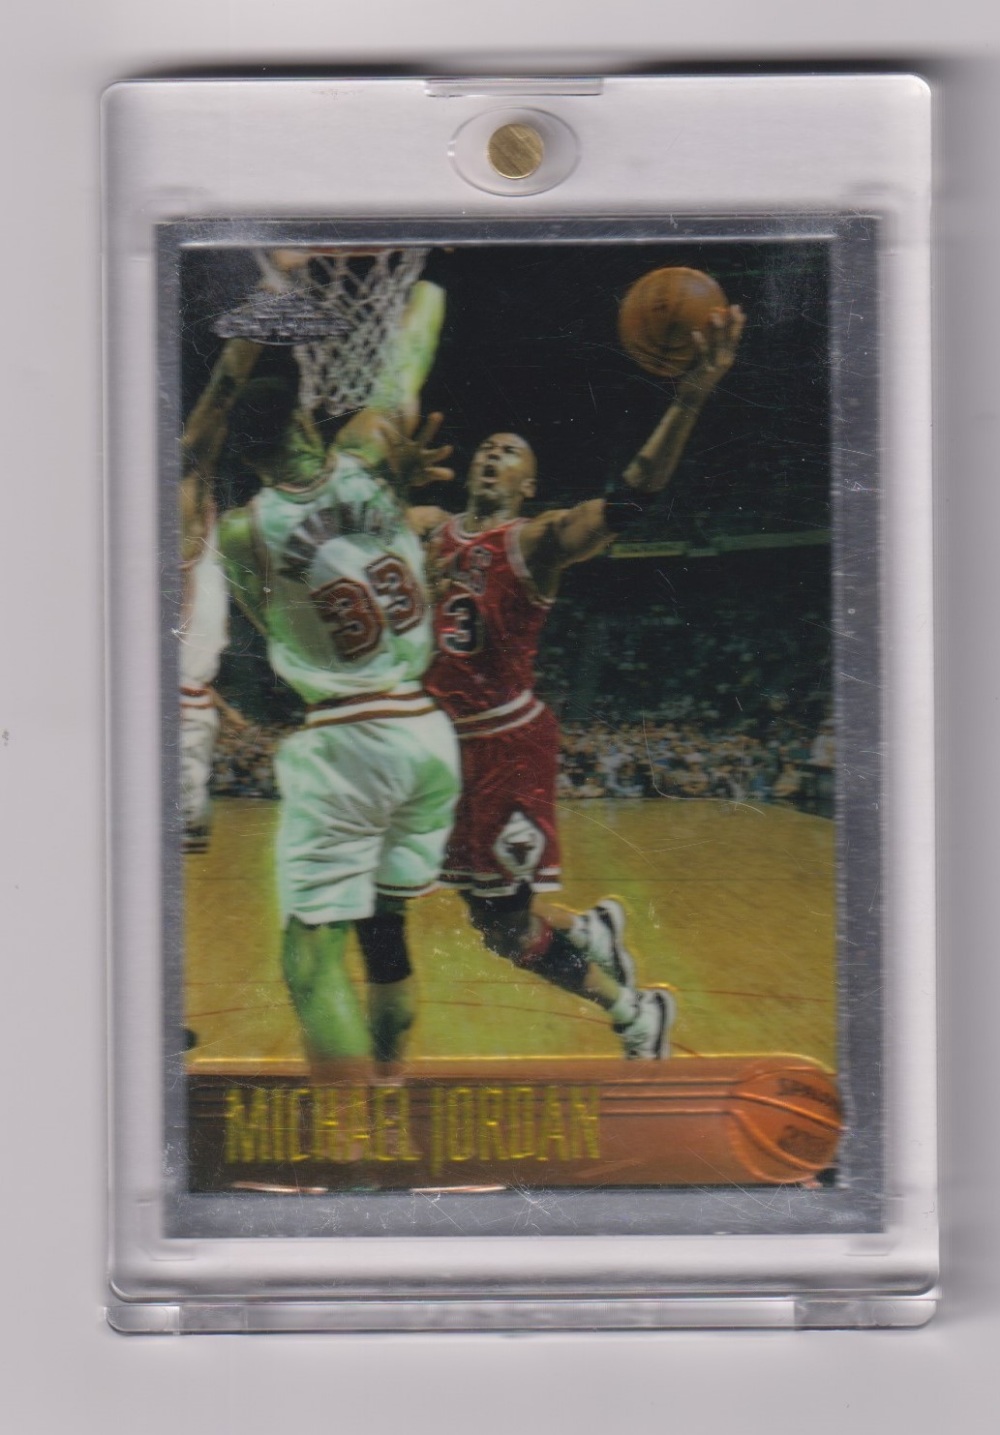 Trade card, Basketball, 1996 Topps, Michael Jordan, scarce chrome silver card, no 139 (vg) (1)